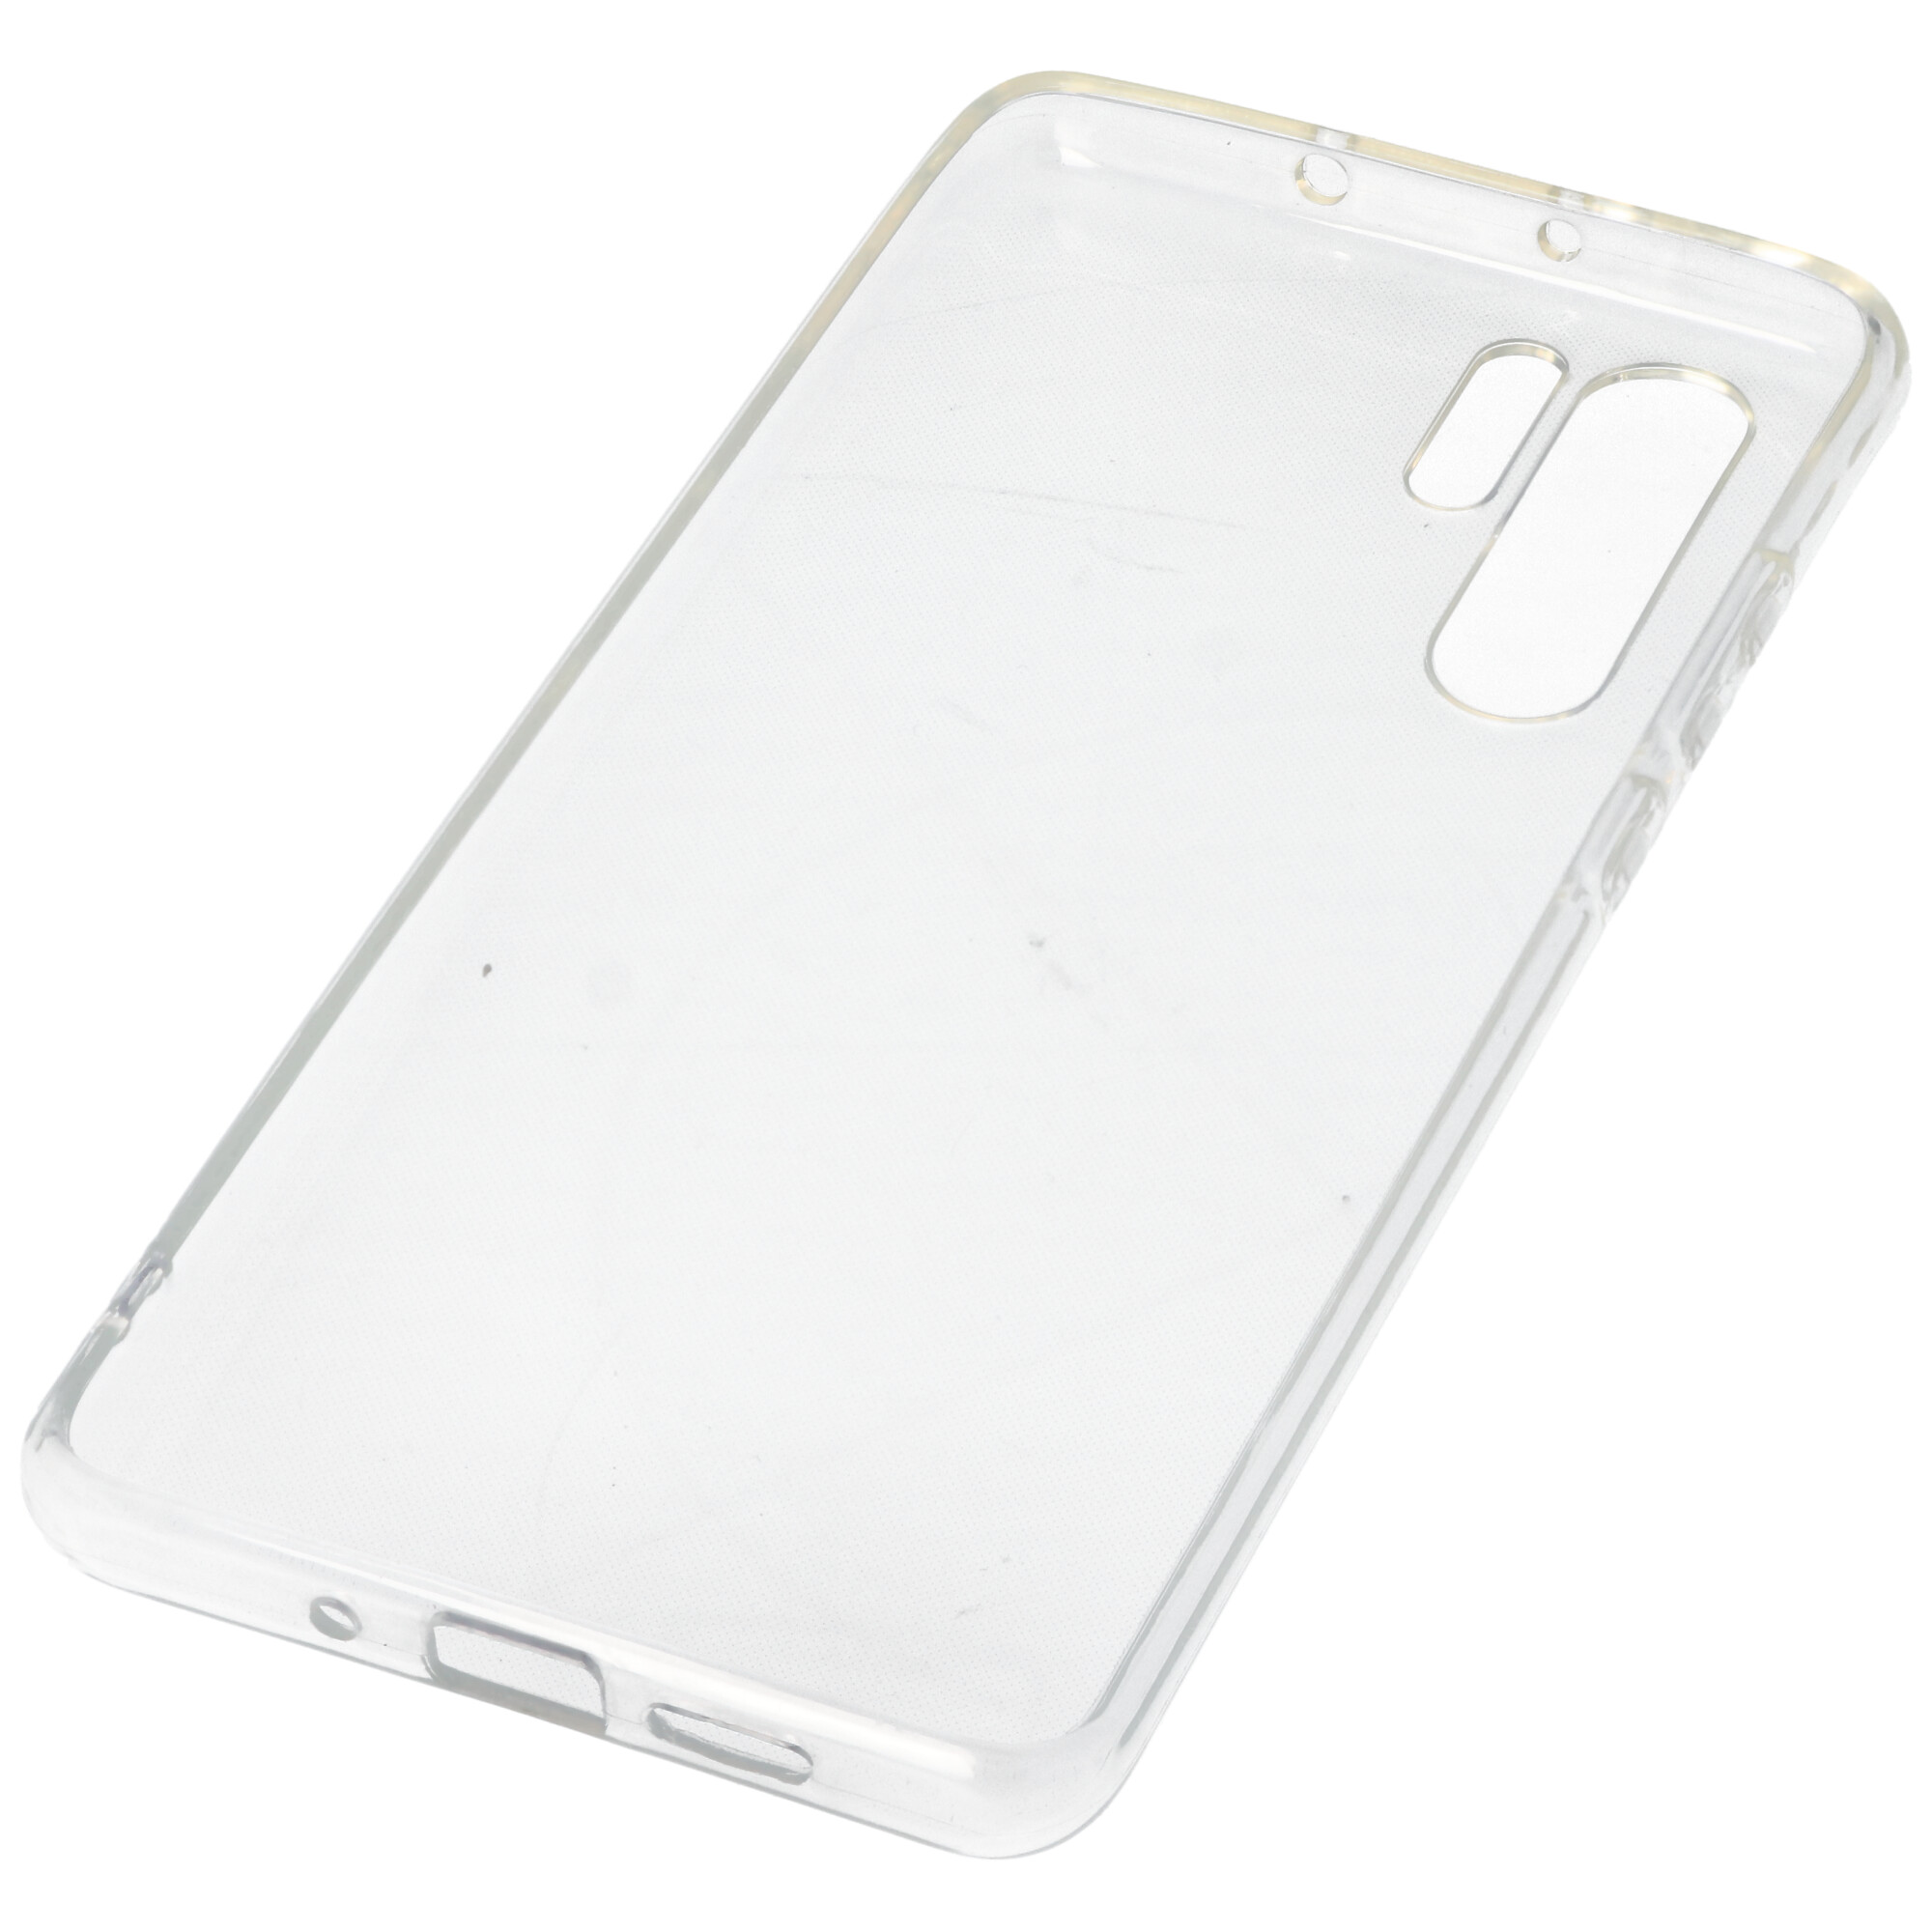 Hülle passend für Huawei P30 Pro - transparente Schutzhülle, Anti-Gelb Luftkissen Fallschutz Silikon Handyhülle robustes TPU Case